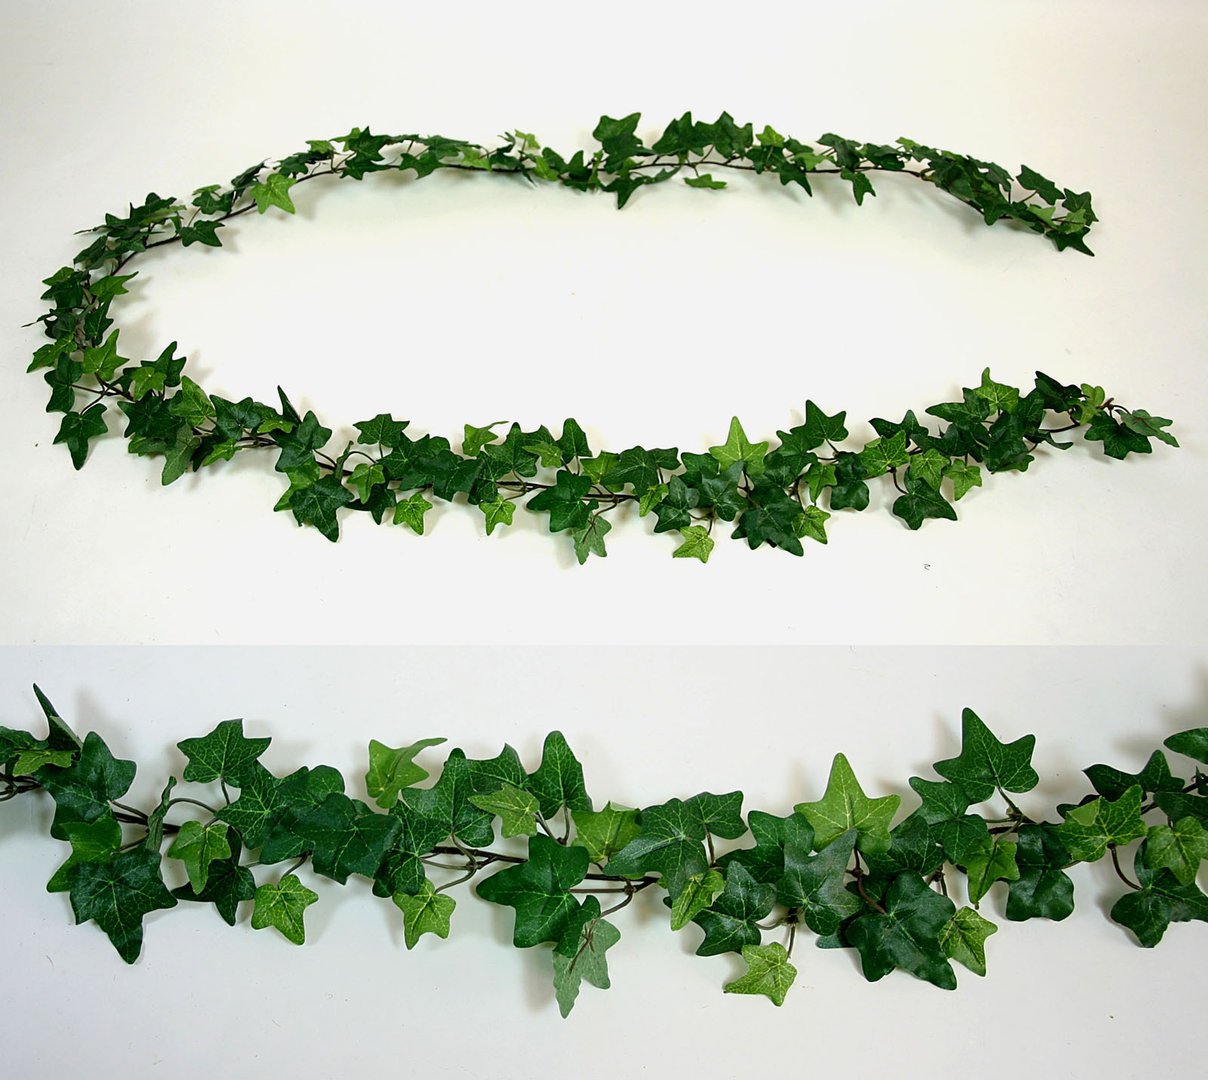 Efeugirlande 180cm grün DA - Kunstpflanzen Kunstblumen künstliches Efeu